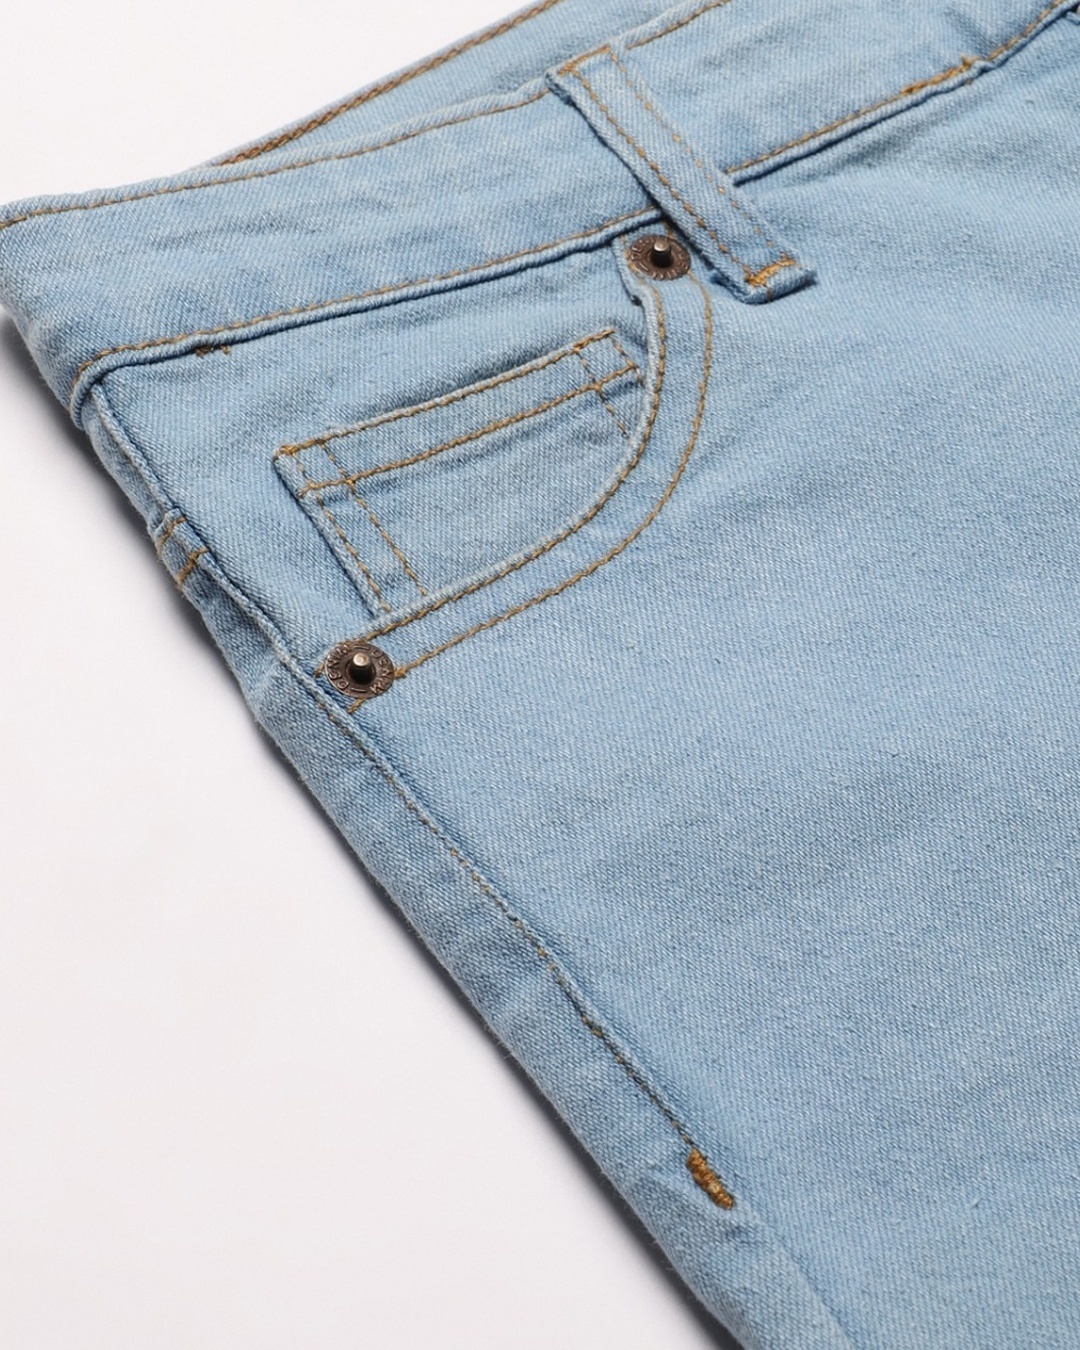 Shop Women's Blue High Rise Jeans